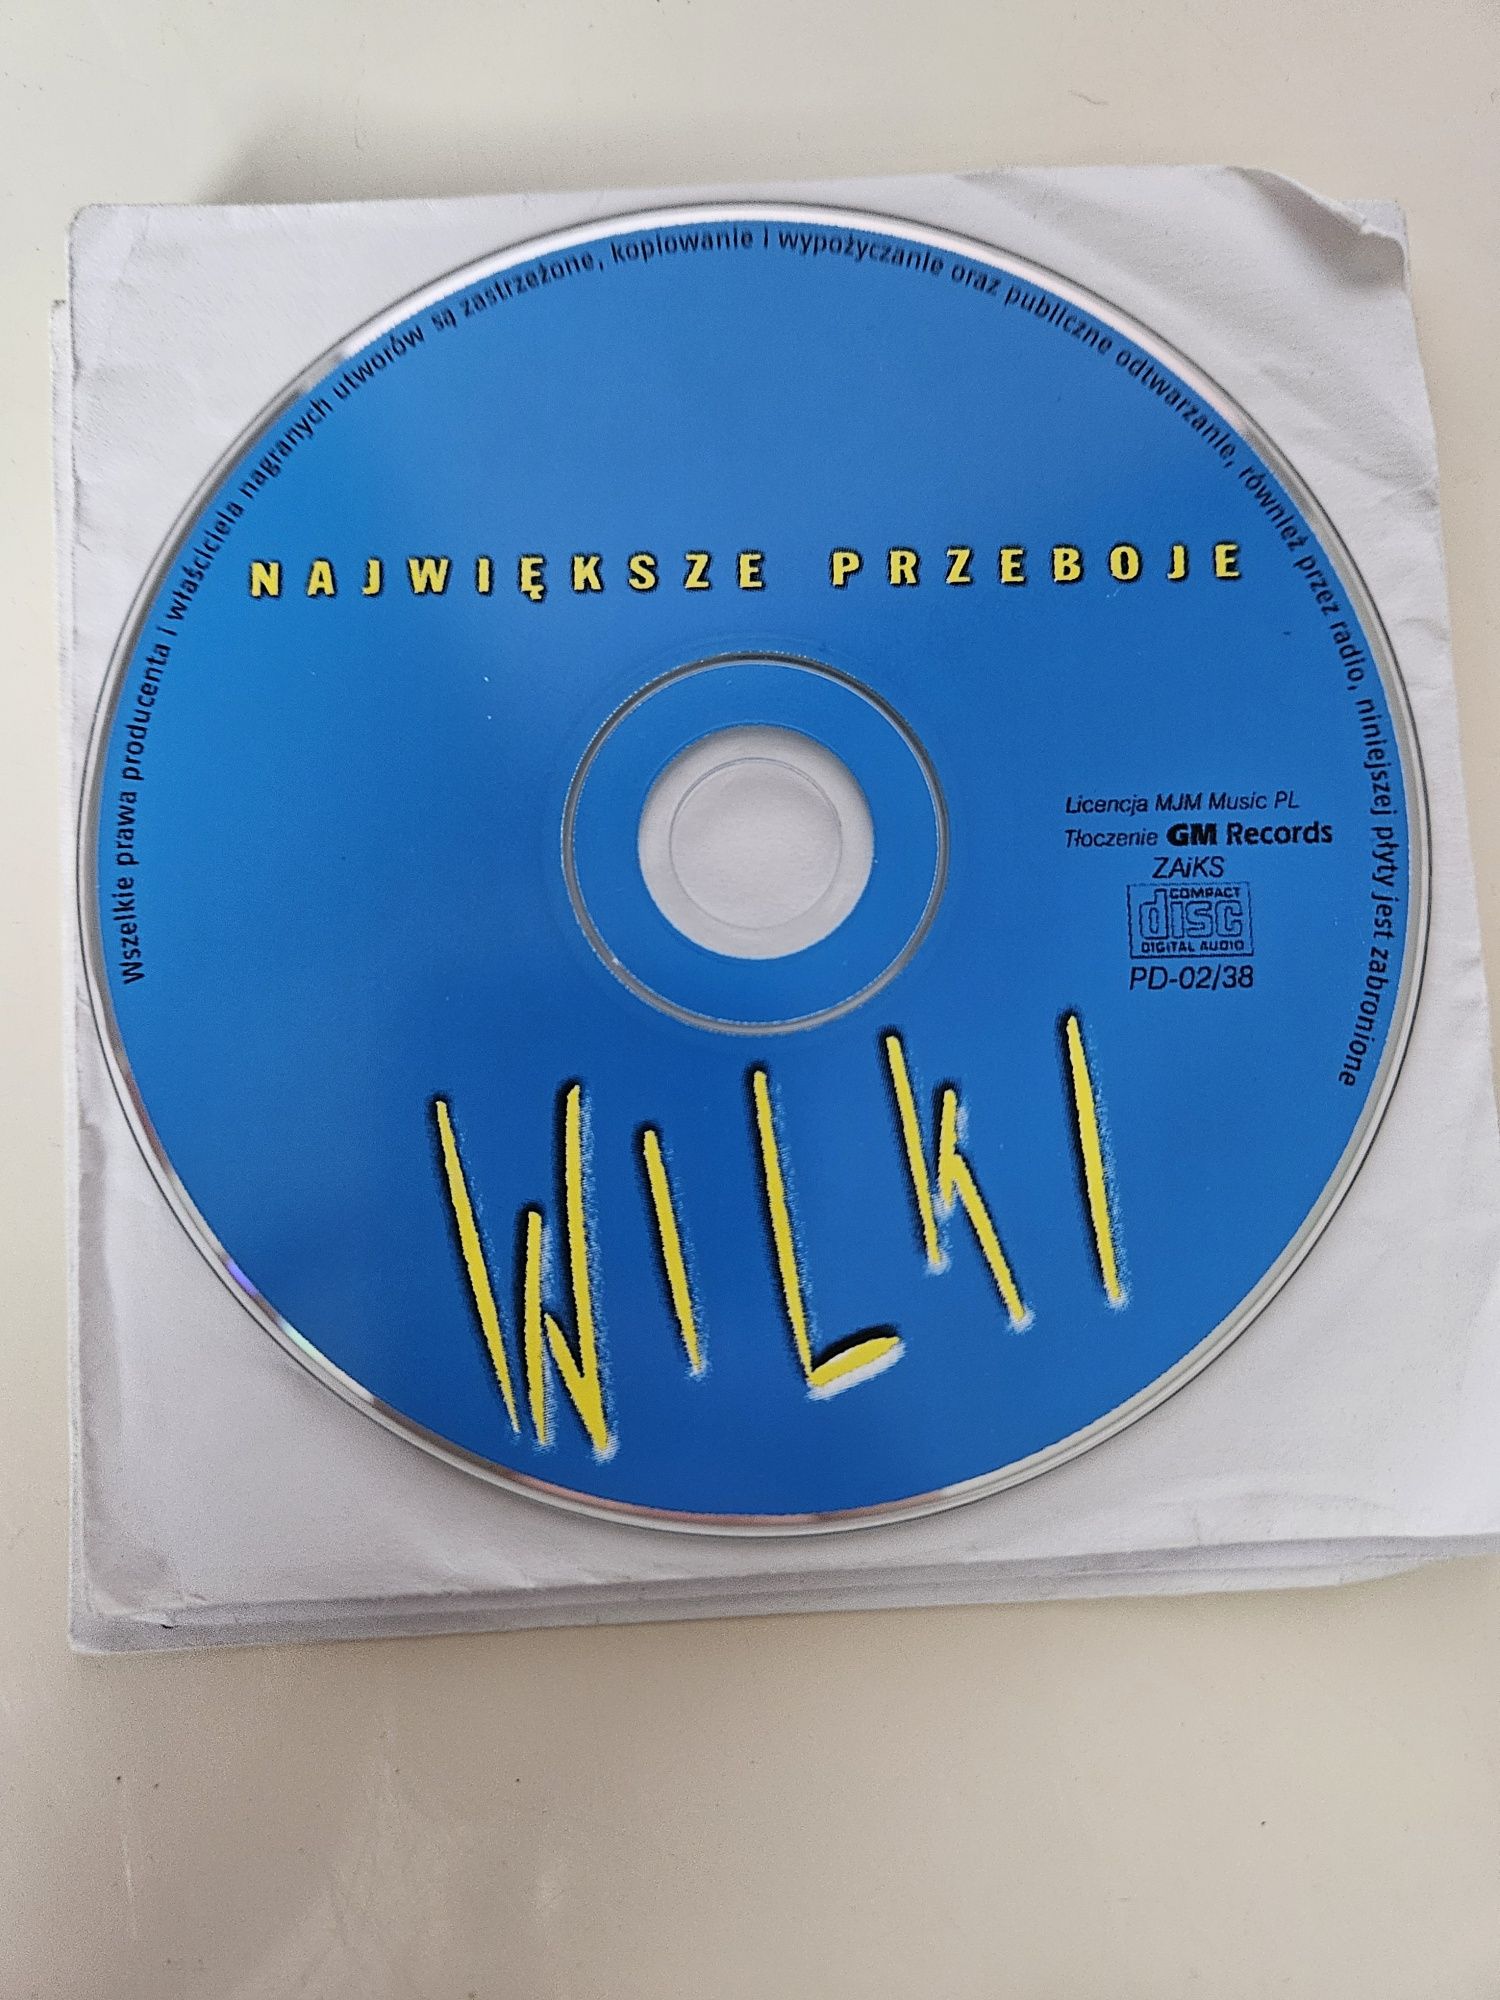 Plyta płyty cd wilki papa Dance